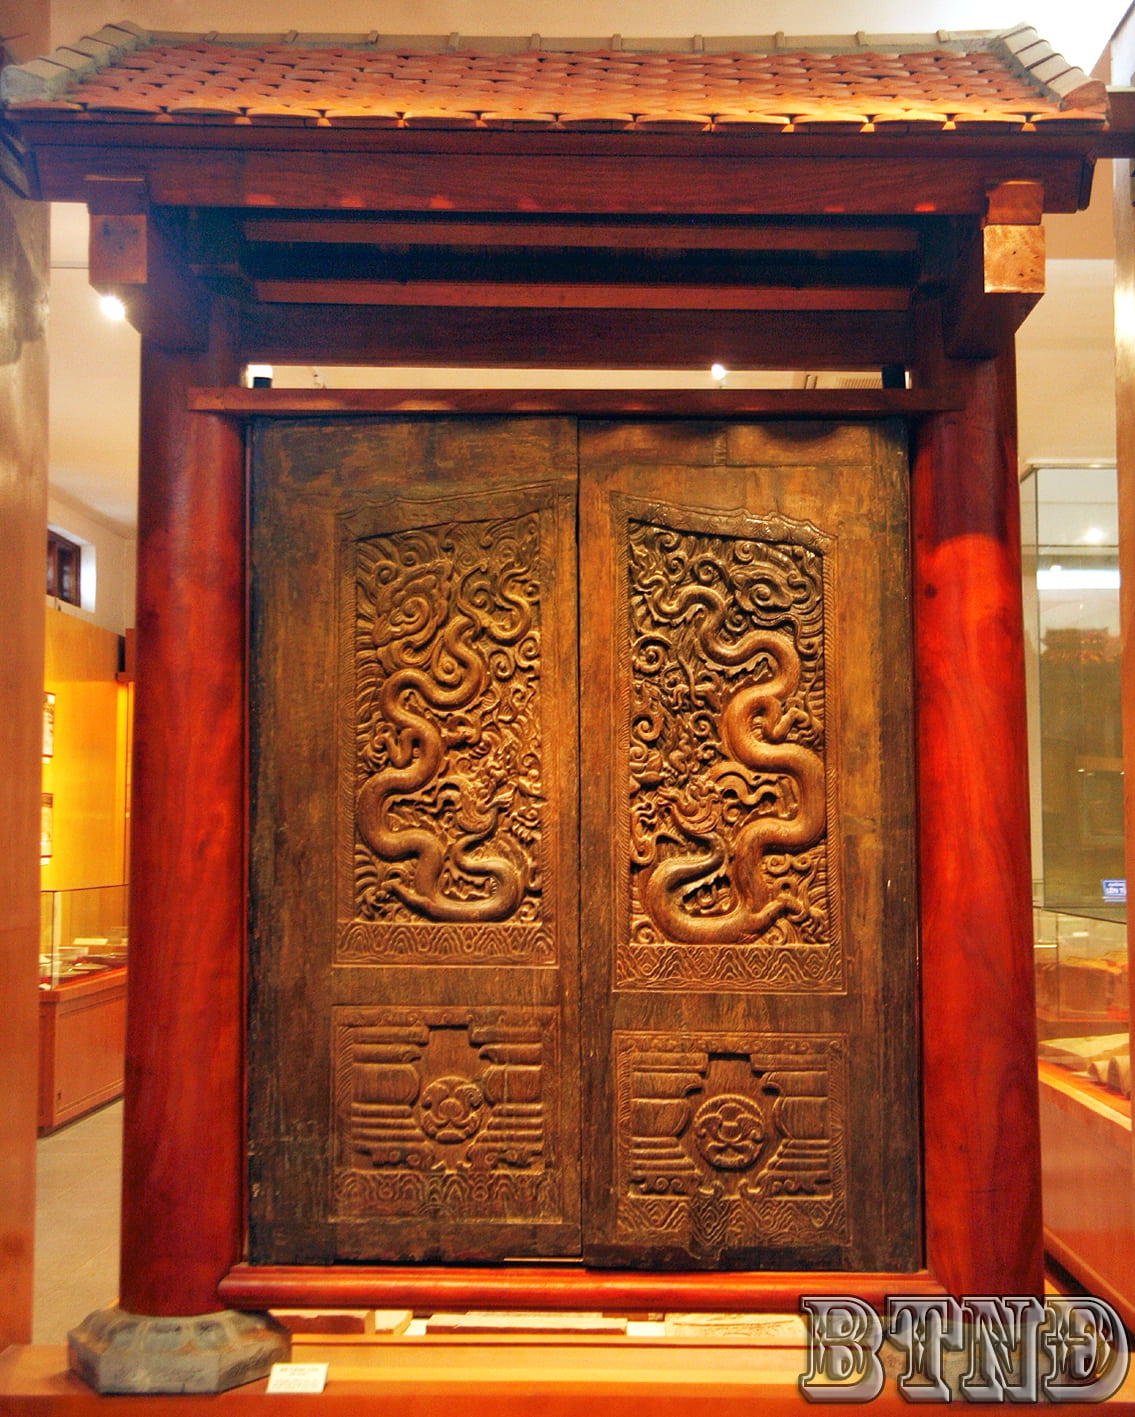 Tại sao tượng đầu rồng Hoàng thành Thăng Long được xem là bảo vật quốc gia?
